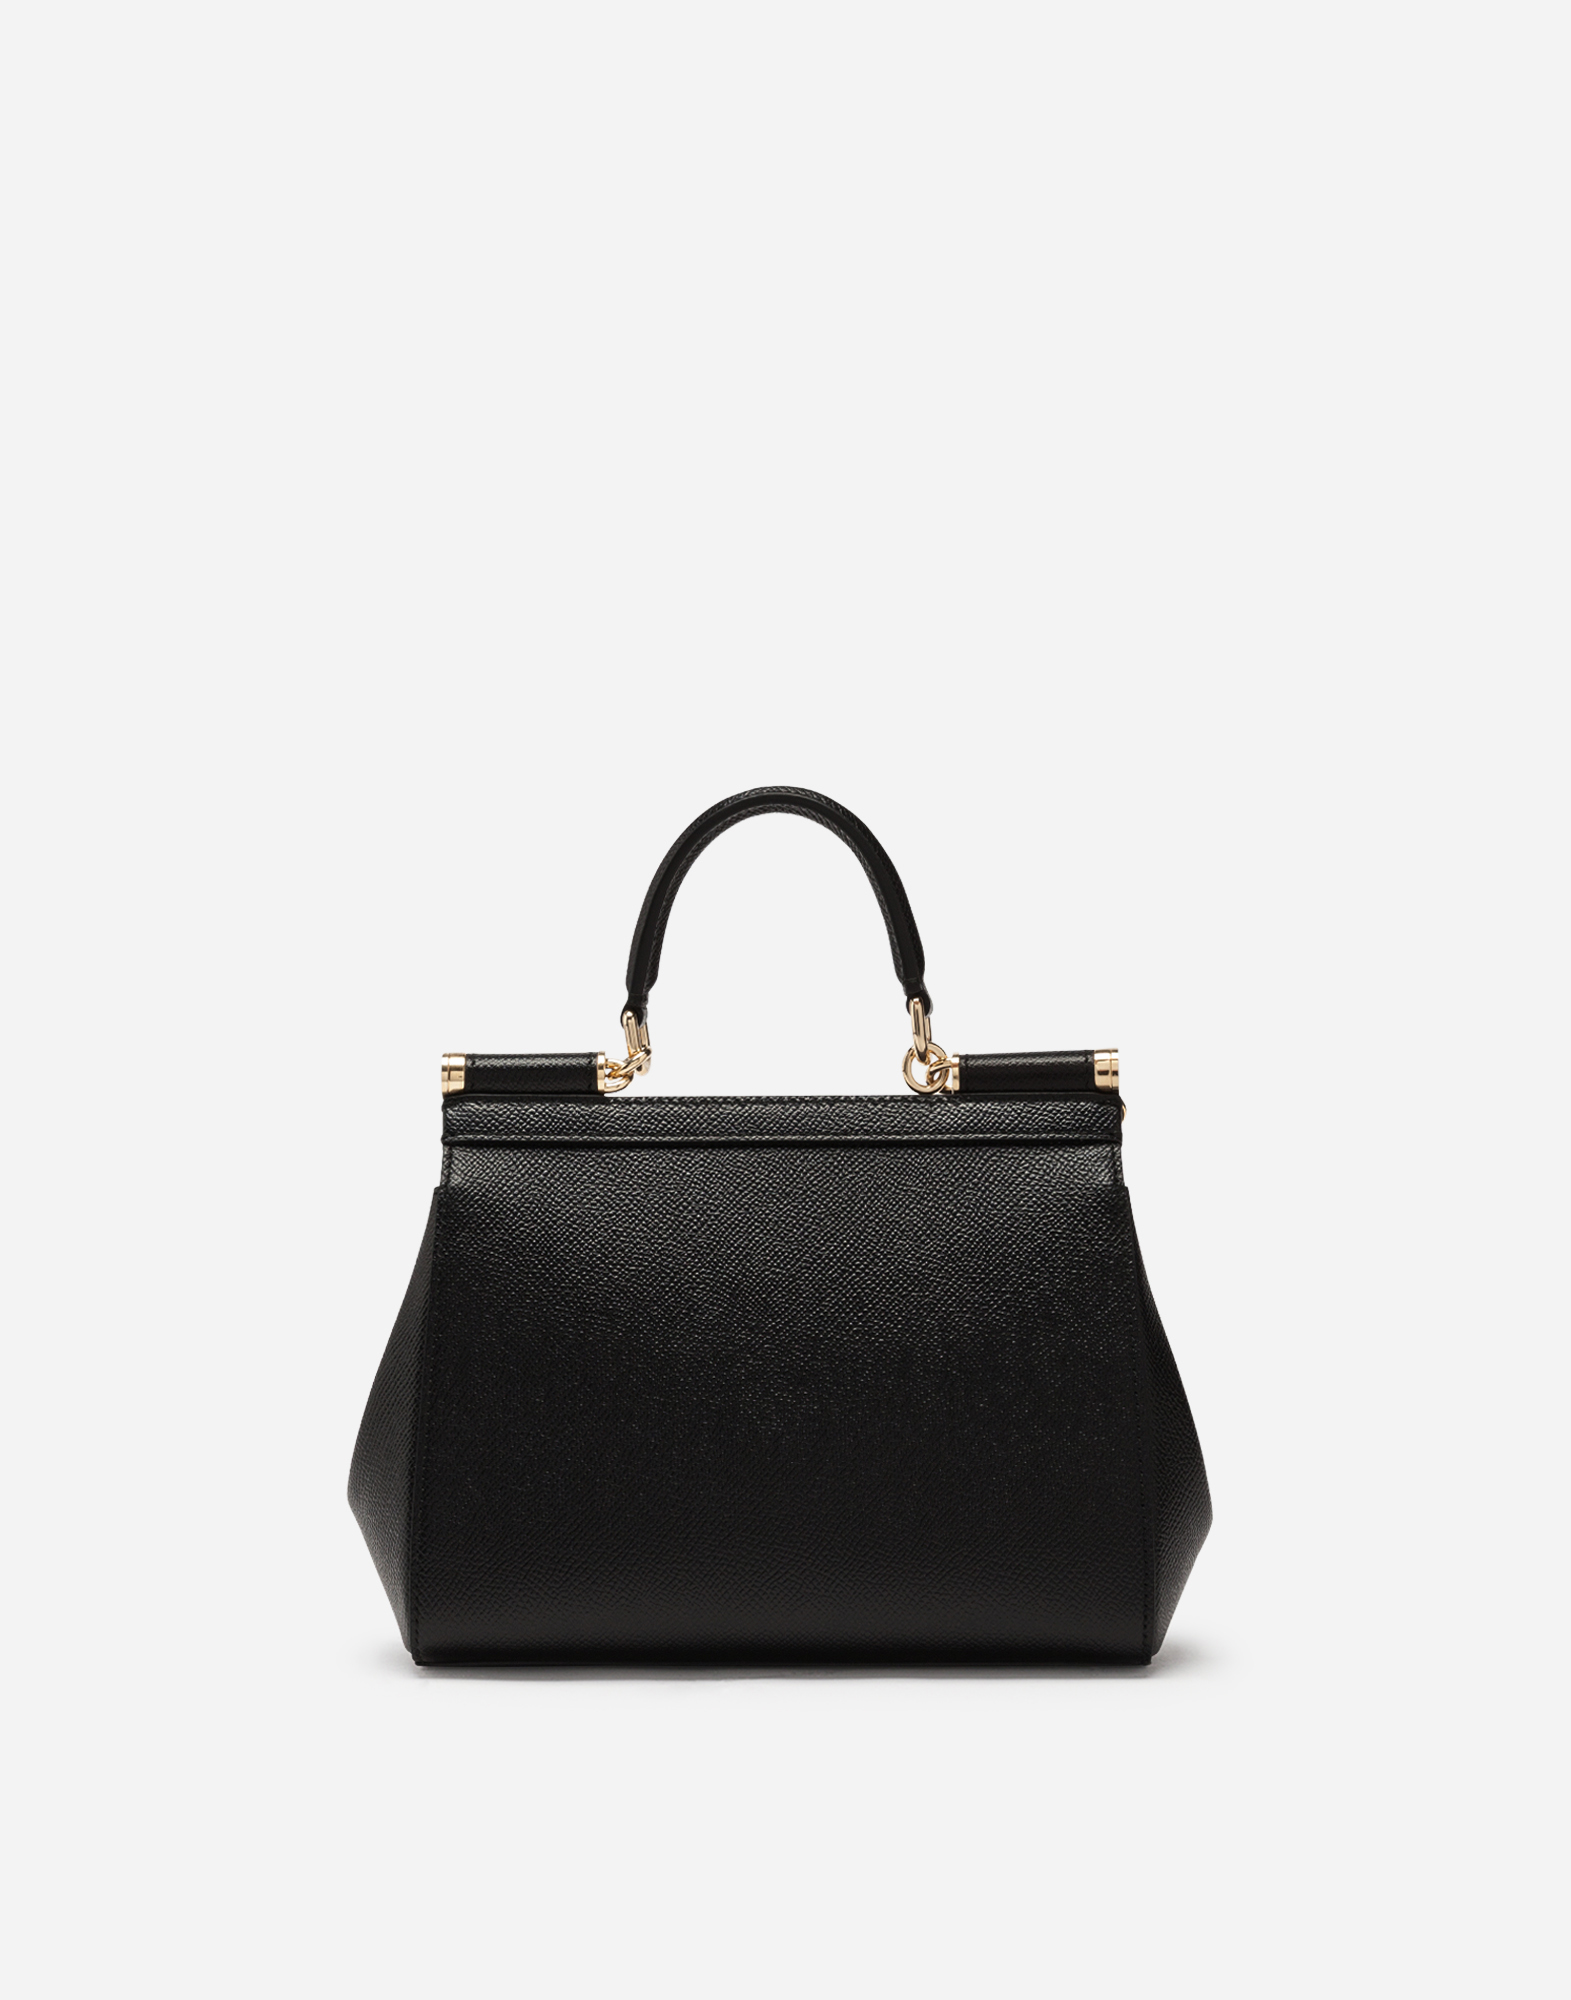 Dolce & Gabbana Small Sicily Bag in Black